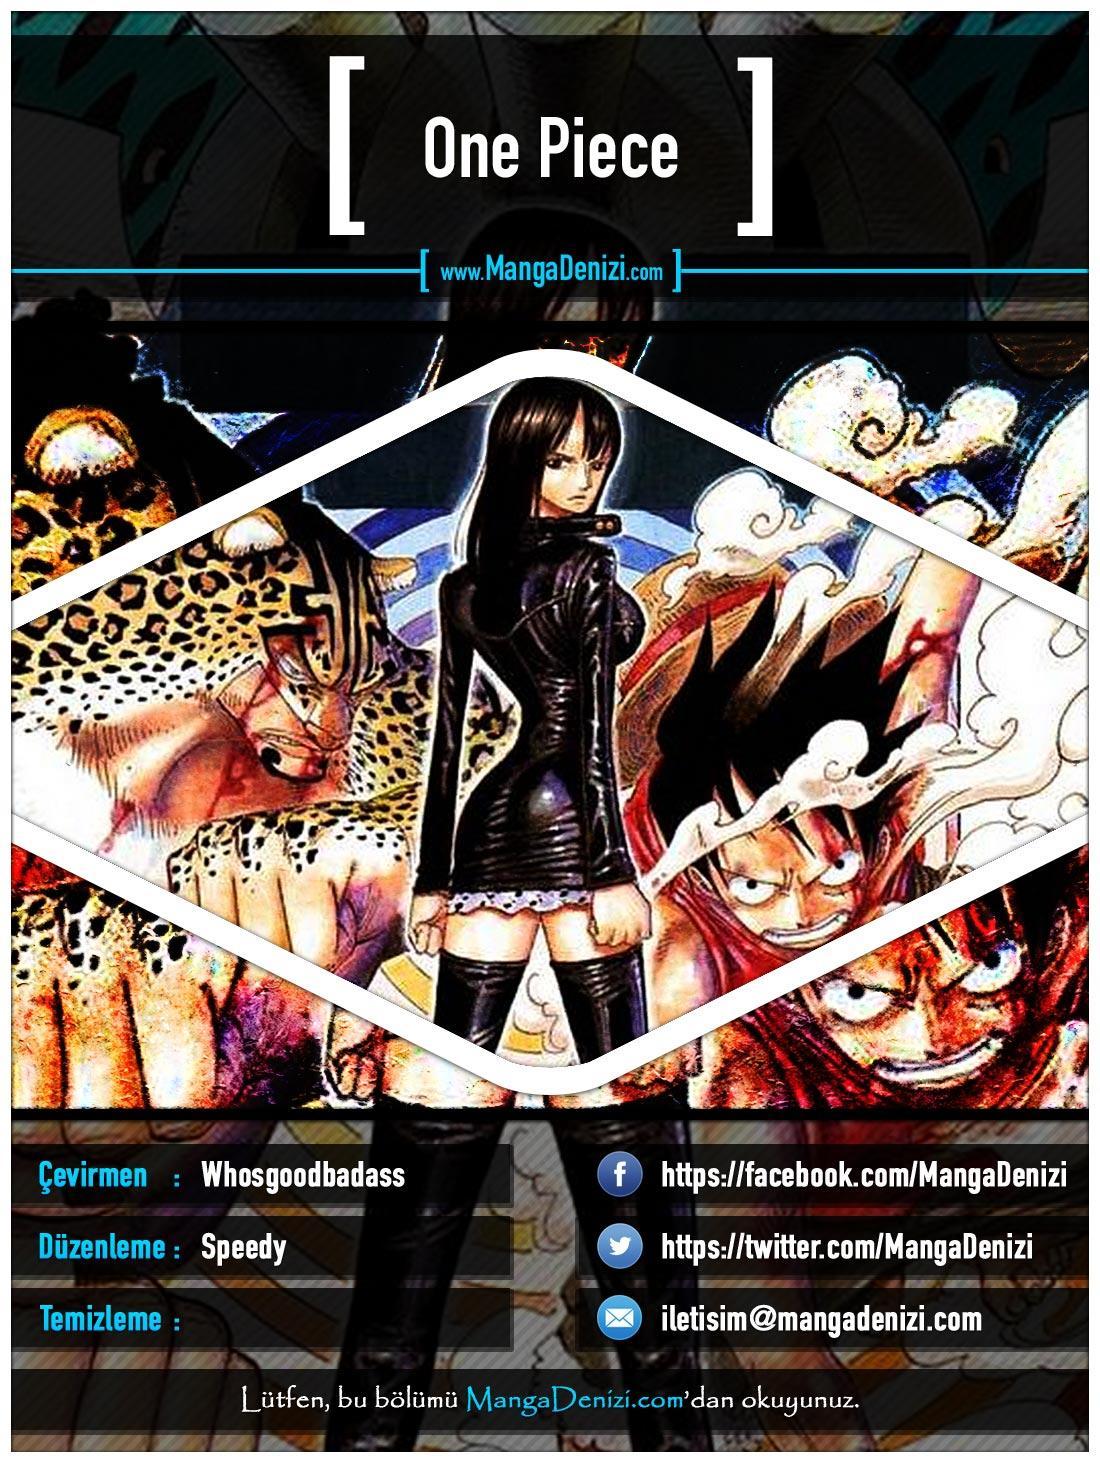 One Piece [Renkli] mangasının 0397 bölümünün 1. sayfasını okuyorsunuz.